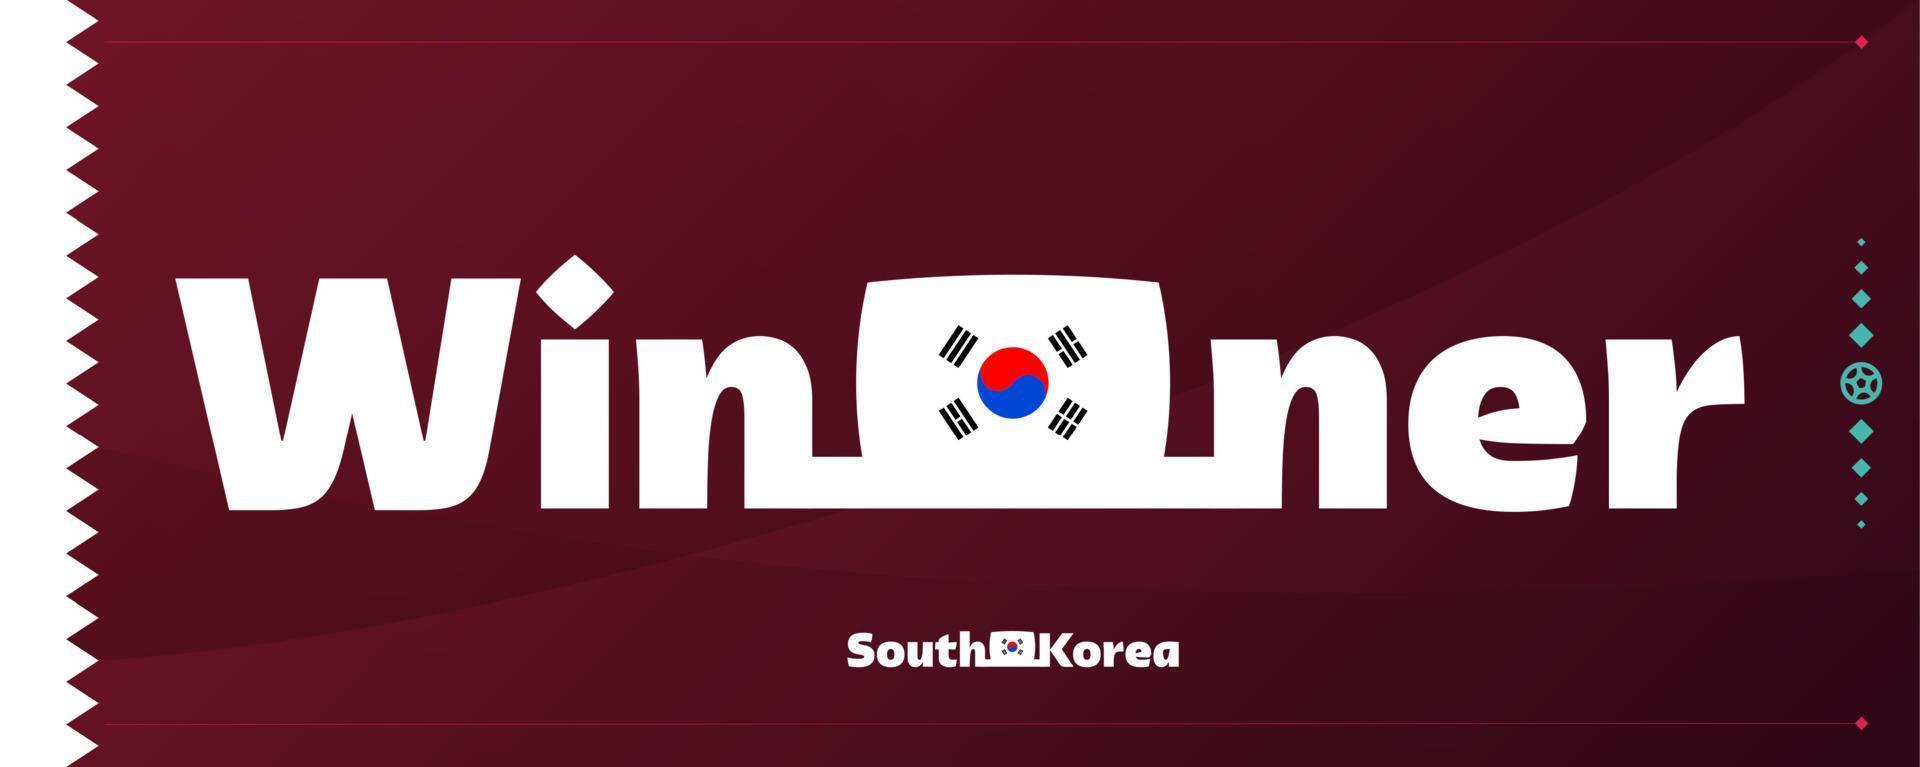 zuiden Korea vlag met winnaar leuze Aan Amerikaans voetbal achtergrond. wereld Amerikaans voetbal 2022 toernooi vector illustratie